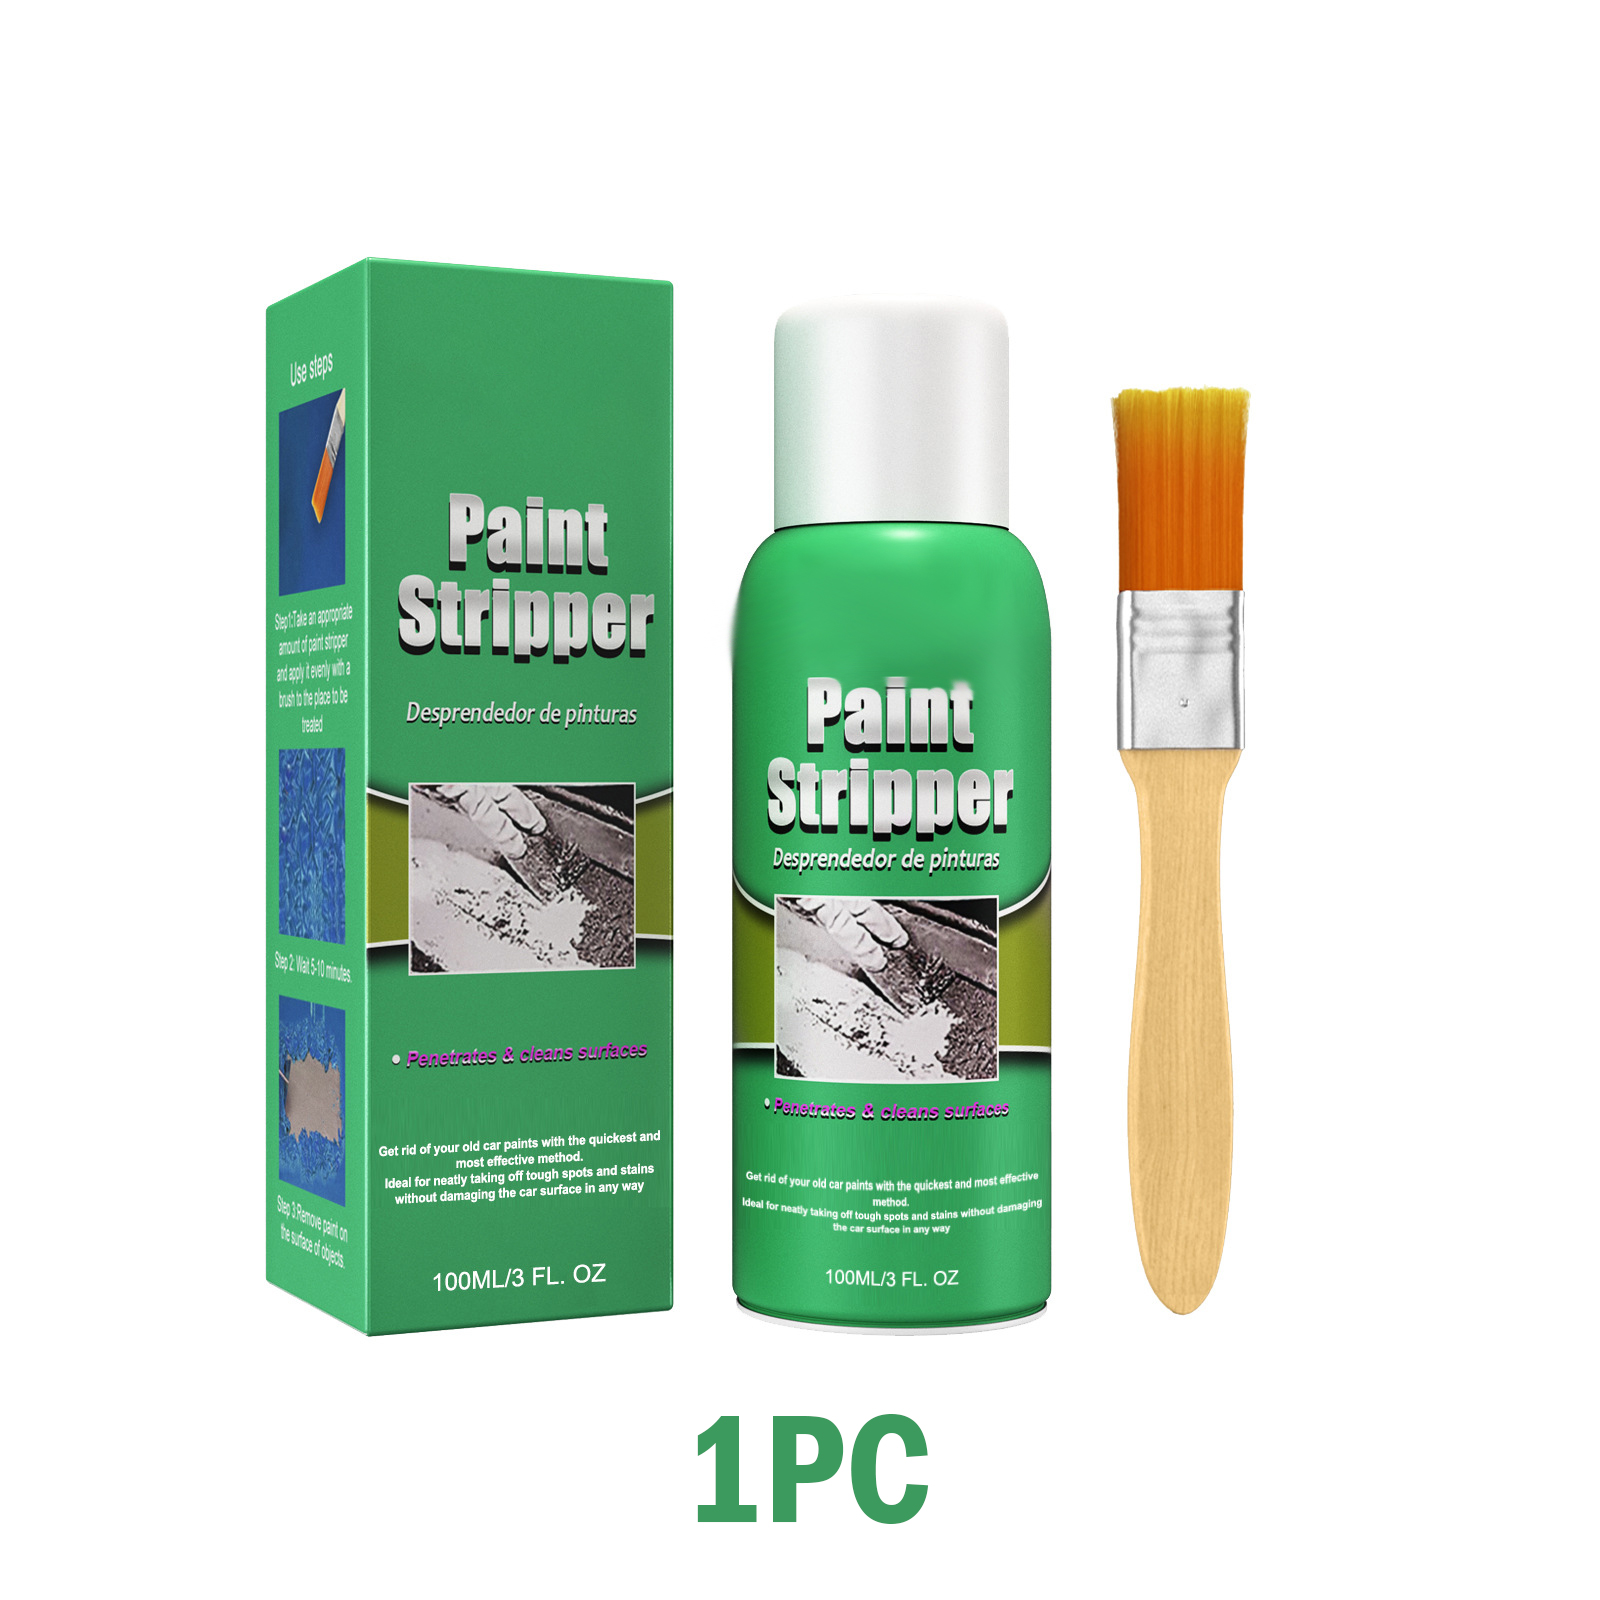 🔥HOT SALE 49% OFF -Efficient Paint Stripper